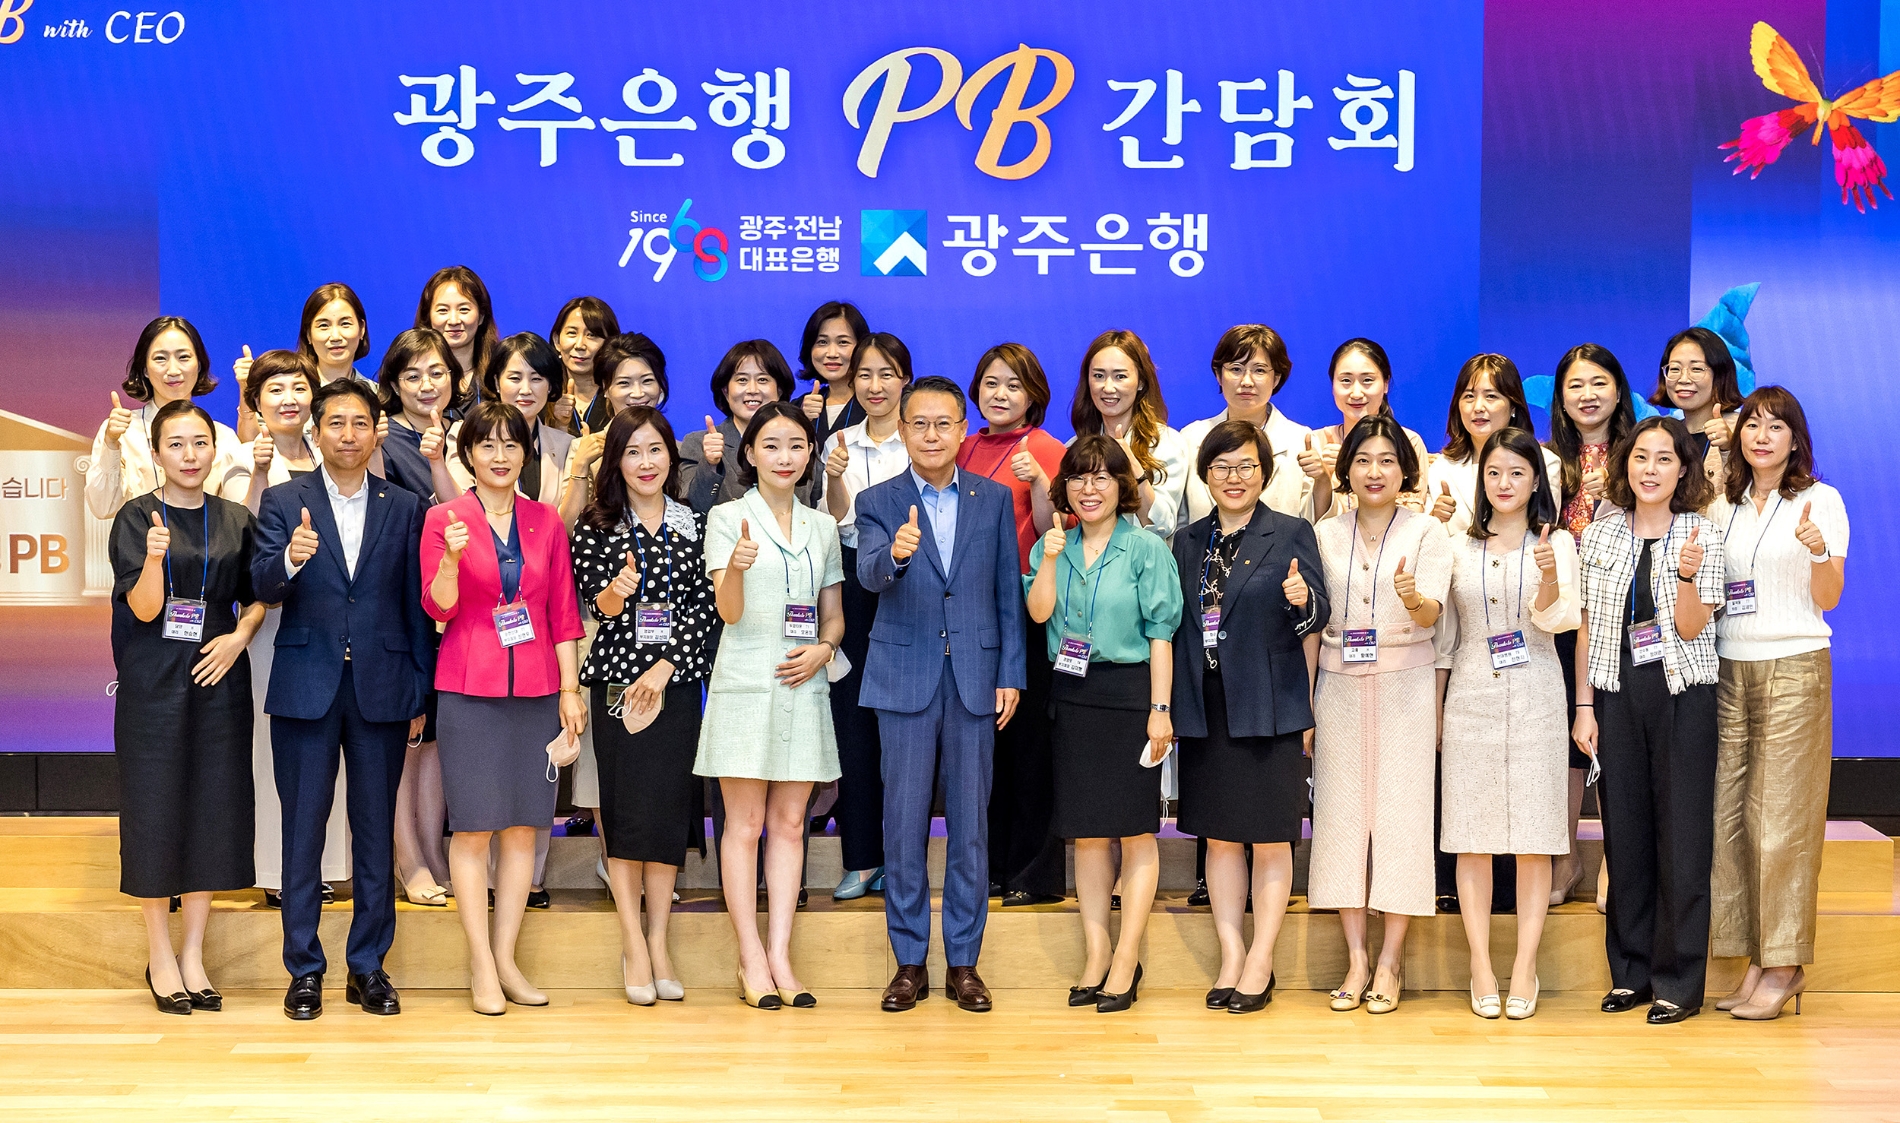 송종욱 광주은행 은행장은 본점에서 PB(Private Banking) 직원과 재무상담역 등이 참석한 가운데 PB 간담회를 개최했다. / 사진제공=광주은행